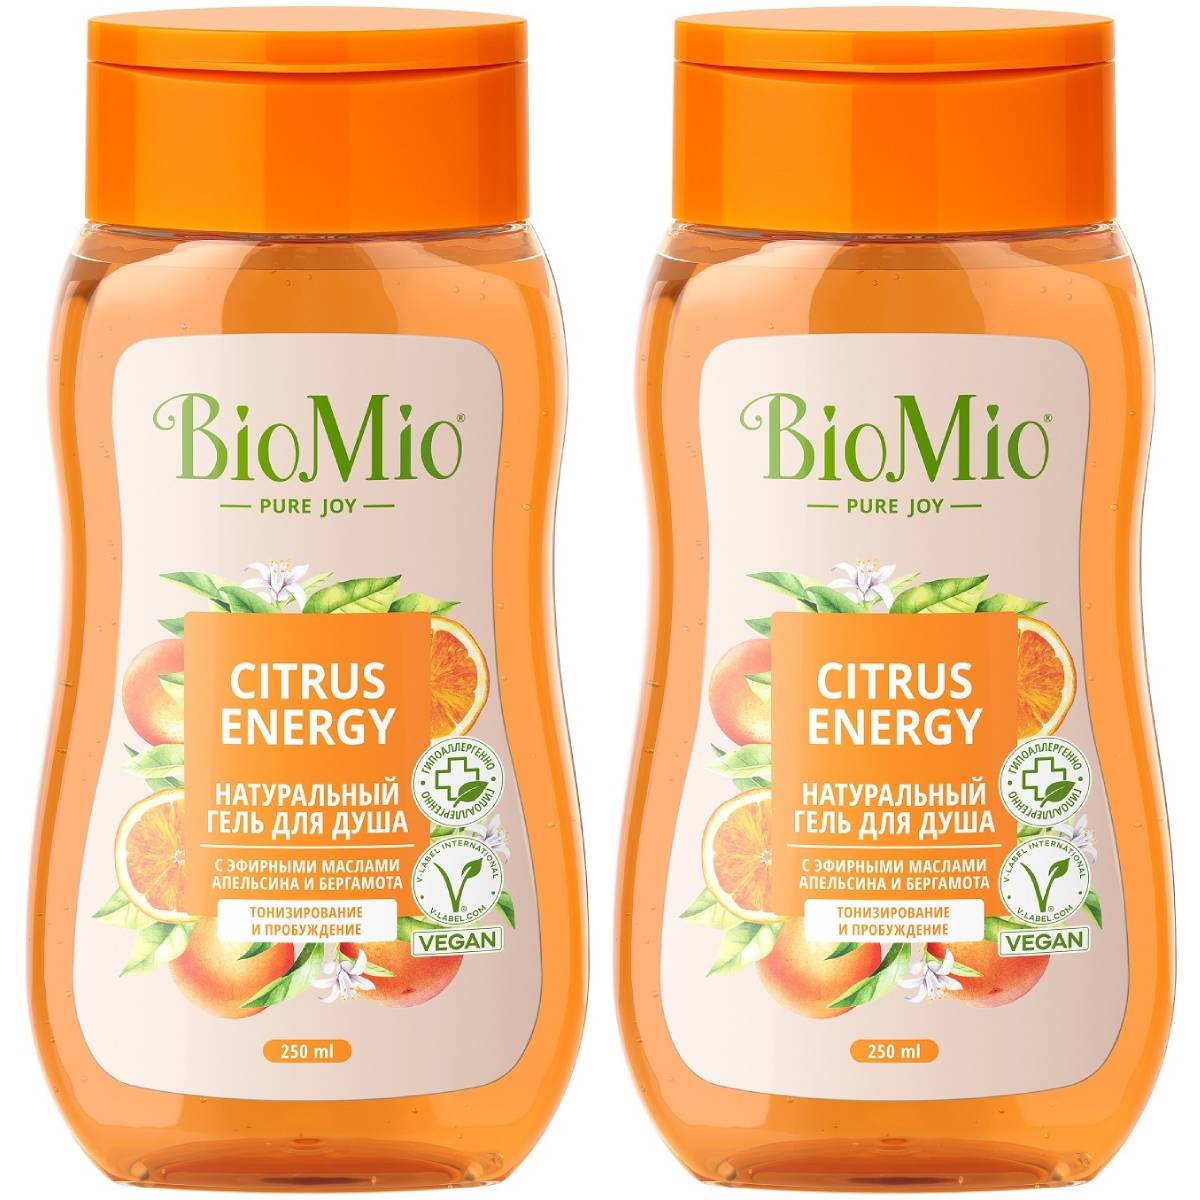 BioMio Гель для душа с эфирными маслами апельсина и бергамота Citrus Energy 3+, 2 х 250 мл (BioMio, Для ванны и душа)